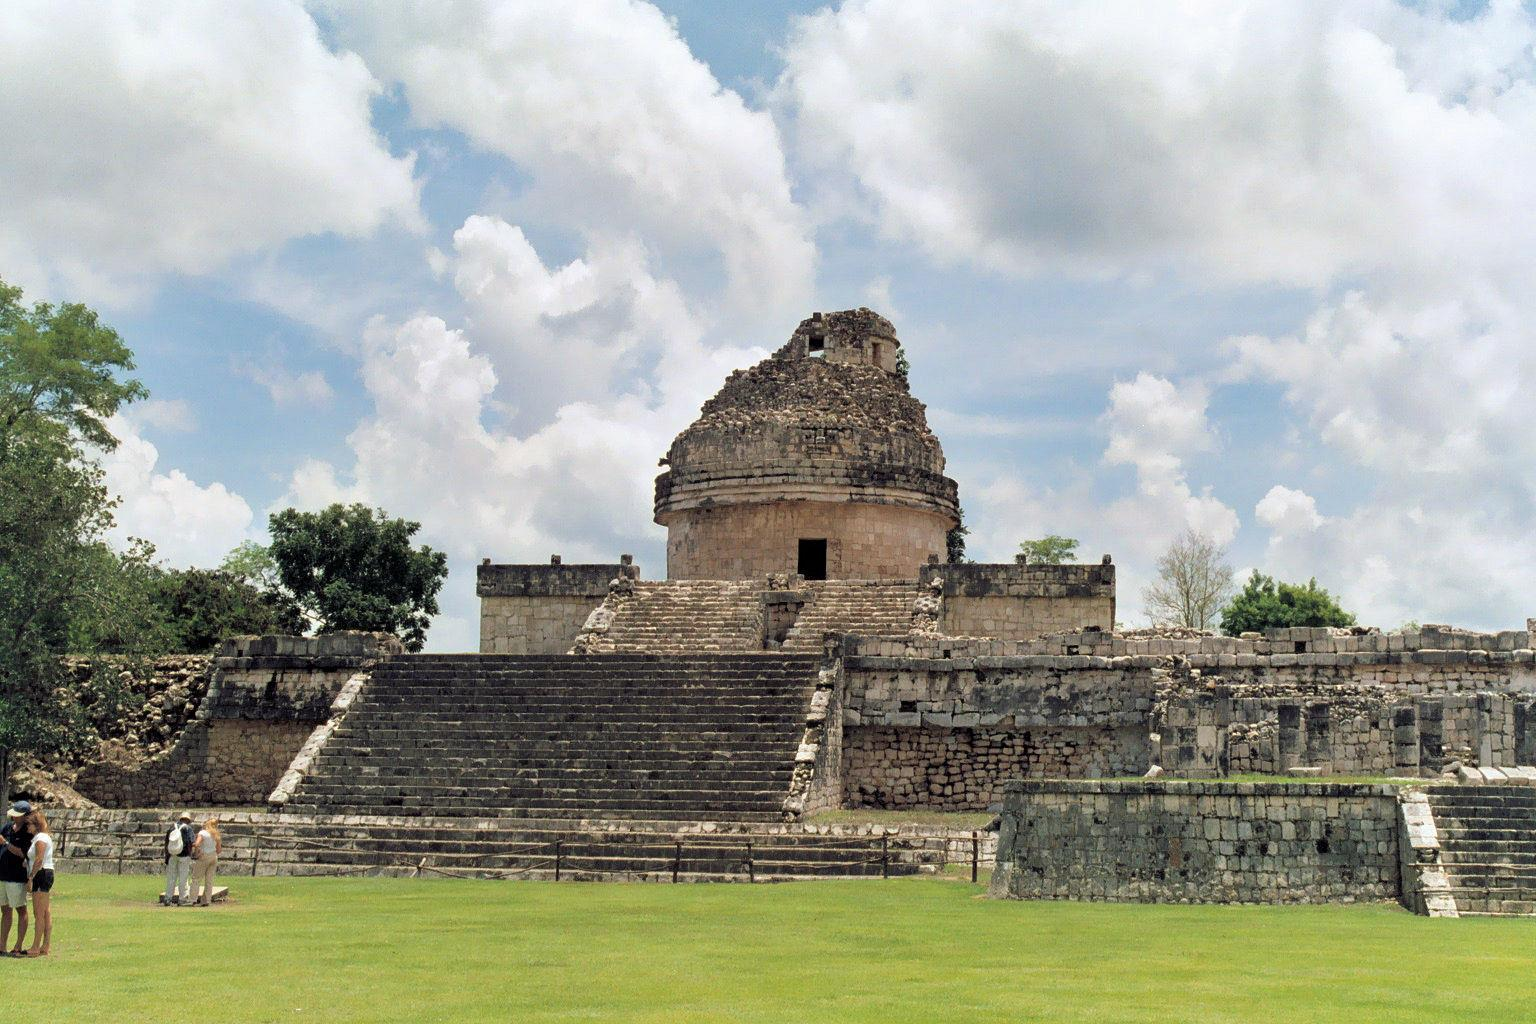 ΤΣΙΤΣΕΝ ΙΤΖΑ Το Τσιτσέν Ιτζά (Chichén Itzá) (από την γλώσσα των Μάγια: "στο στόμα του φρεατίου του Ιτσά") είναι μια μεγάλη προκολομβιανή αρχαιολογική περιοχή που χτίστηκε από τον πολιτισμό των Μάγια